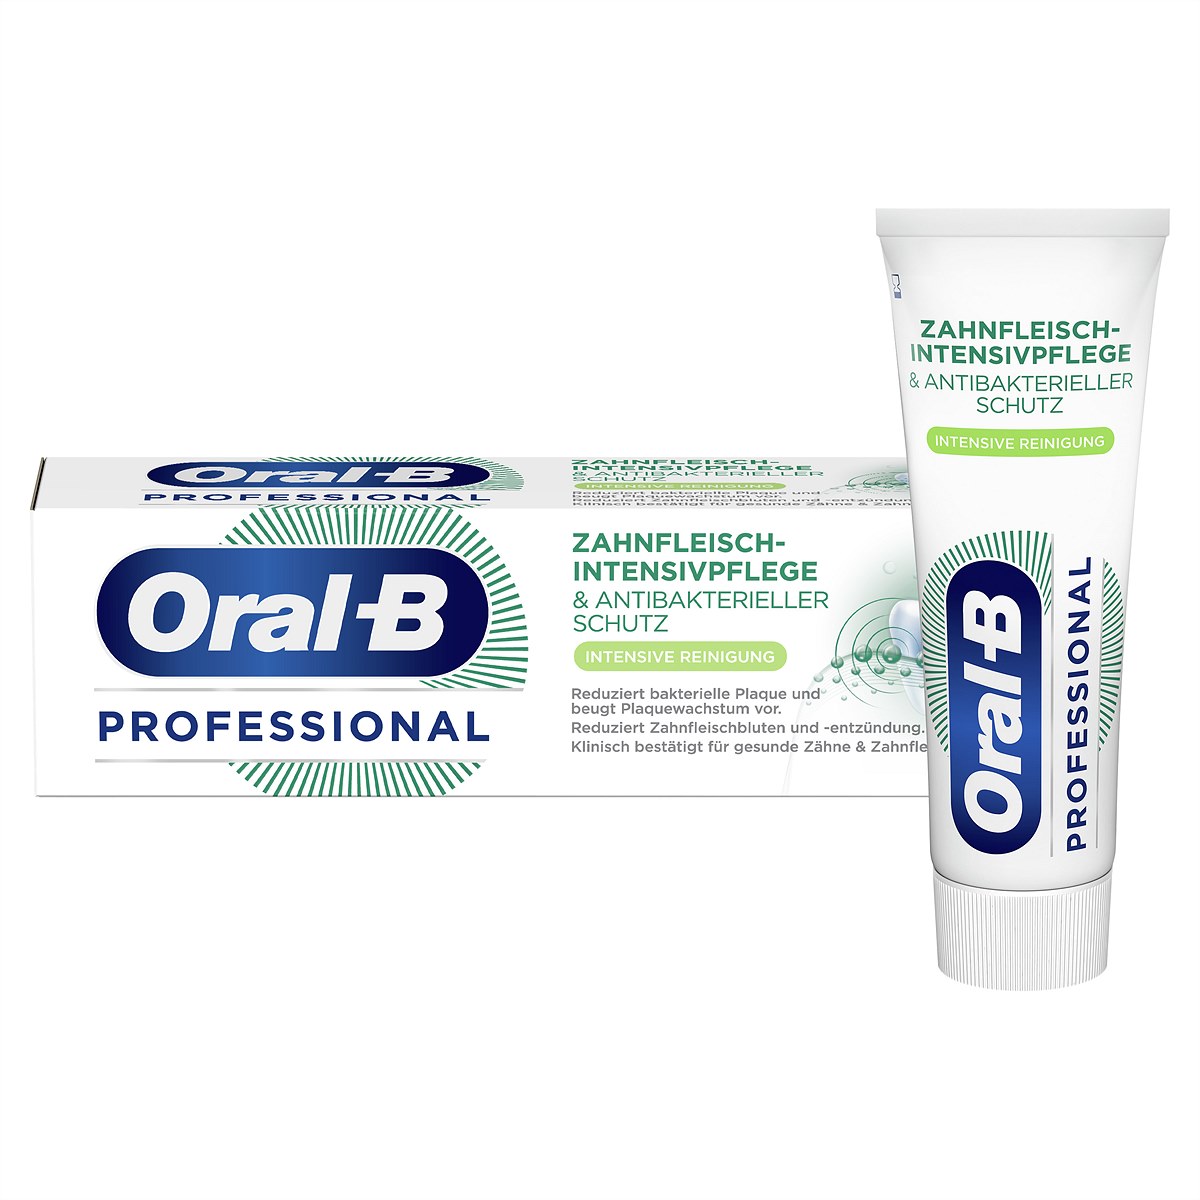 Oral-B Professional Zahnfleisch-Intensivpflege & Antibakterieller Schutz